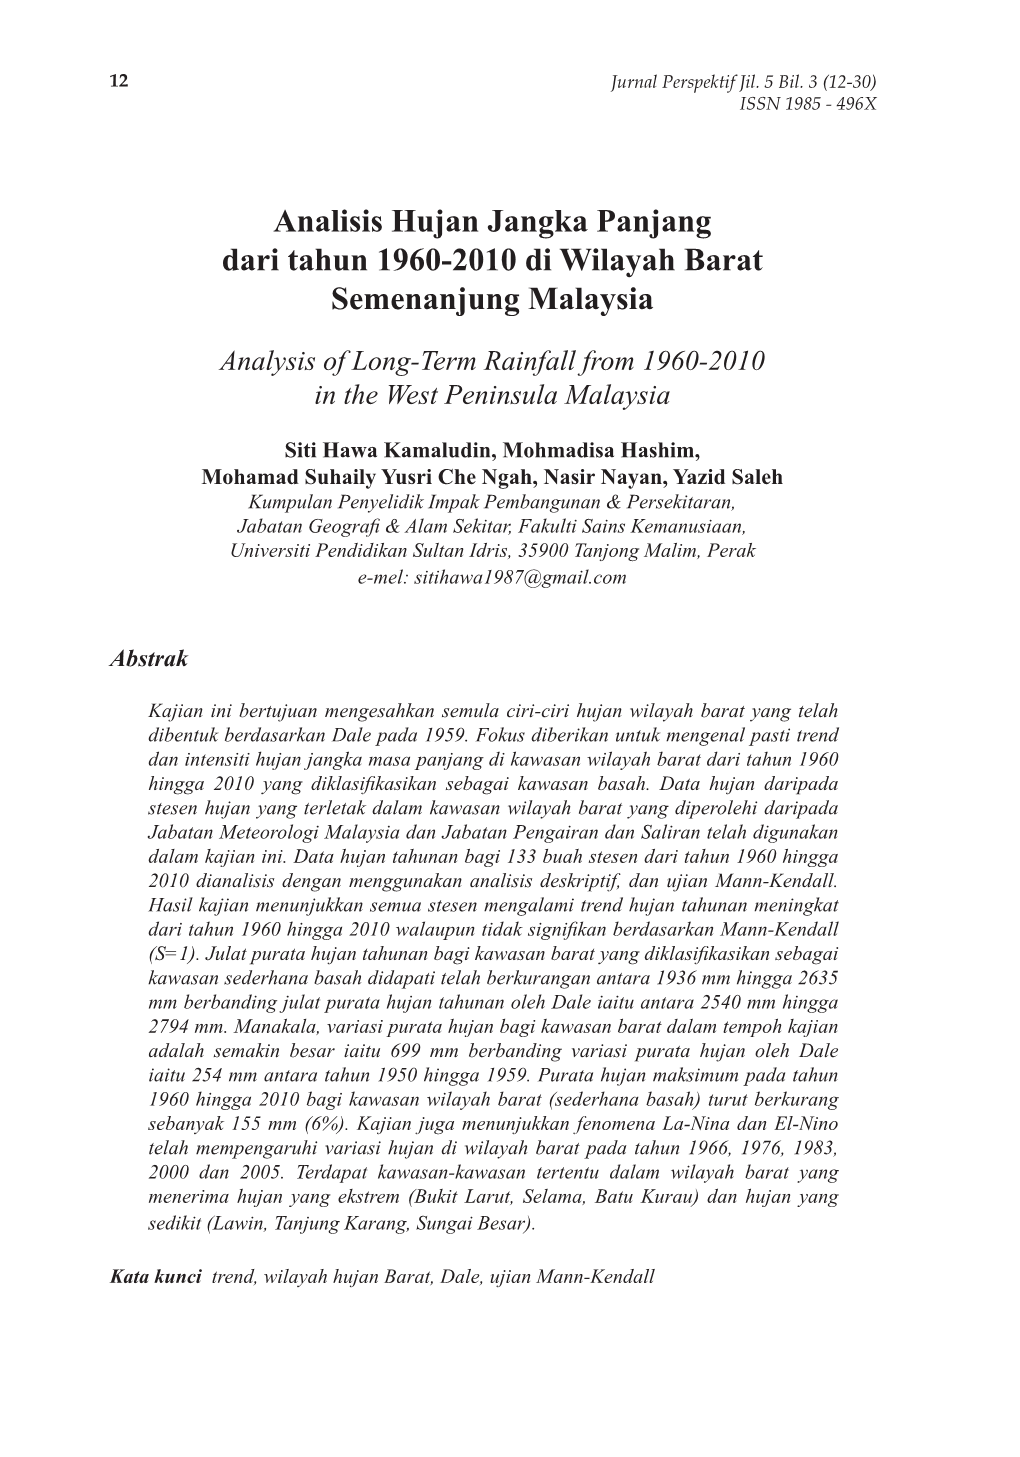 Analisis Hujan Jangka Panjang Dari Tahun 1960-2010 Di Wilayah Barat Semenanjung Malaysia